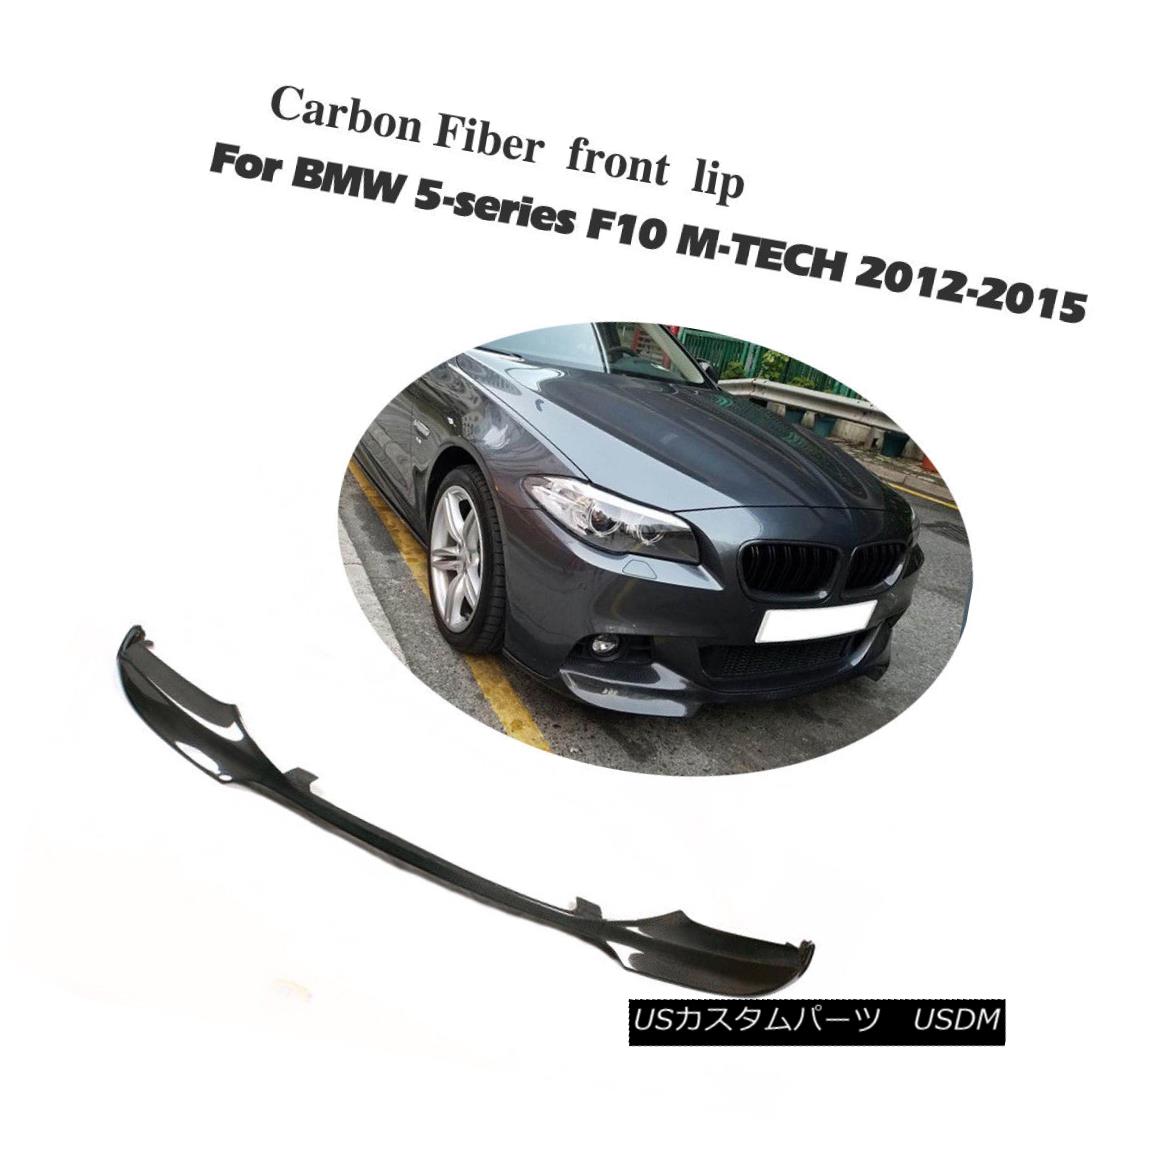 Carbon Fiber Front Bumper Lip Chin Spoiler for BMW F10 528i 535i 550i MTech12-15カテゴリエアロパーツ状態新品メーカーBMW車種528i発送詳細送料一律 1000円（※北海道、沖縄、離島は省く）商品詳細輸入商品の為、英語表記となります。 Condition: New Primary Color: Black Material: carbon Fiber Interchange Part Number: 530i 550i Lower Apron Chin Spoiler Air Dam Chin, 528i Auto Front Chin Spoiler Car Front Lip Spoiler UPC: 0703290338289 Other Part Number: F10 car turning Front chin lip Spoiler Surface Finish: Primer Brand: carturning Manufacturer Part Number: Front lip Warranty: 90 Day Placement on Vehicle: Front Country/Region of Manufacture: China Attachment Method: Screws, Glue tape※以下の注意事項をご理解頂いた上で、ご入札下さい※■海外輸入品の為、NC,NRでお願い致します。■フィッテングや車検対応の有無については、画像と説明文よりお客様の方にてご判断をお願いしております。■USのカスタムパーツは国内の純正パーツを取り外した後、接続コネクタが必ずしも一致するとは限らず、加工が必要な場合がございます。■商品説明文中に英語にて”保障”に関する記載があっても適応はされませんので、ご理解ください。■初期不良（到着より7日以内）のみ保証対象とします。ただし、取り付け後は、保証対象外とします。■海外倉庫から到着した製品を、再度国内で検品を行い、日本郵便または佐川急便にて発送となります。■お届けまでには、2〜3週間程頂いております。ただし、天候次第で多少遅れが発生する場合もあります。■商品落札後のお客様のご都合によるキャンセルはお断りしておりますが、商品落札金額の30％の手数料をいただいた場合のみお受けいたします。■他にもUSパーツを多数出品させて頂いておりますので、ご覧頂けたらと思います。■USパーツの輸入代行も行っておりますので、ショップに掲載されていない商品でもお探しする事が可能です!!お気軽にお問い合わせ下さい。&nbsp;